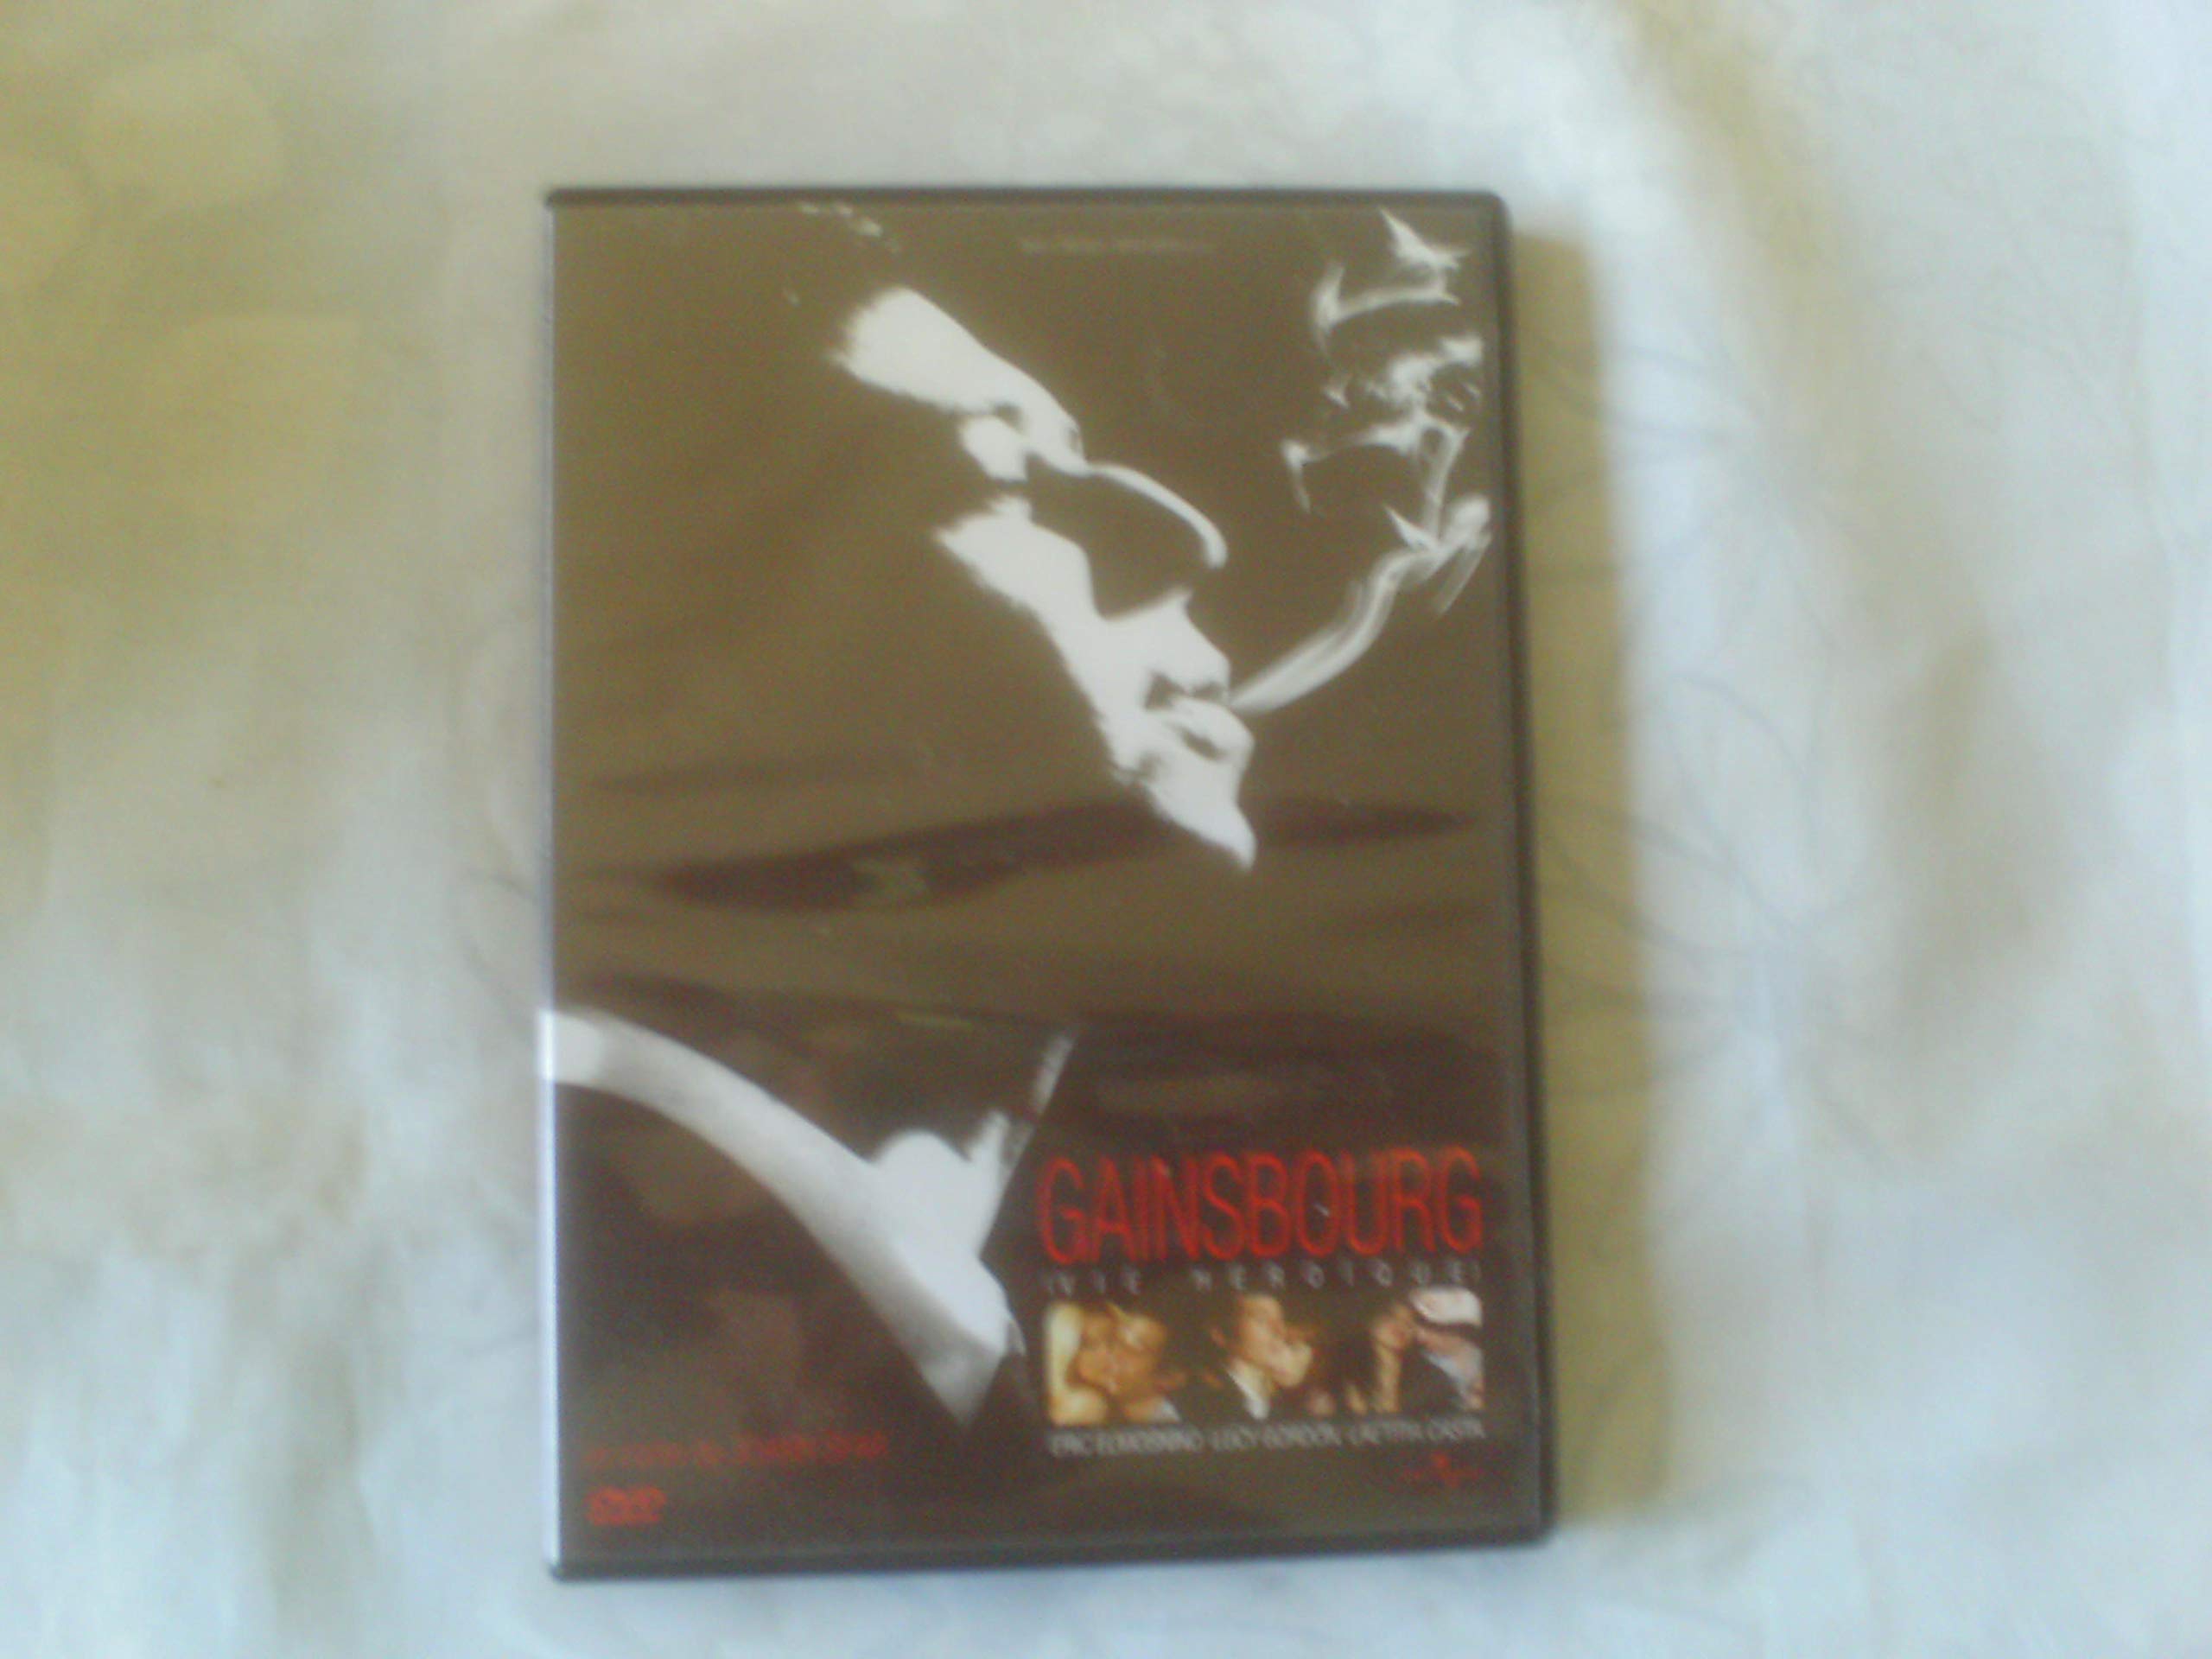 Gainsbourg - vie héroïque, le film (César 2011 du Meilleur Premier Film & Meilleur Acteur) 5050582757385